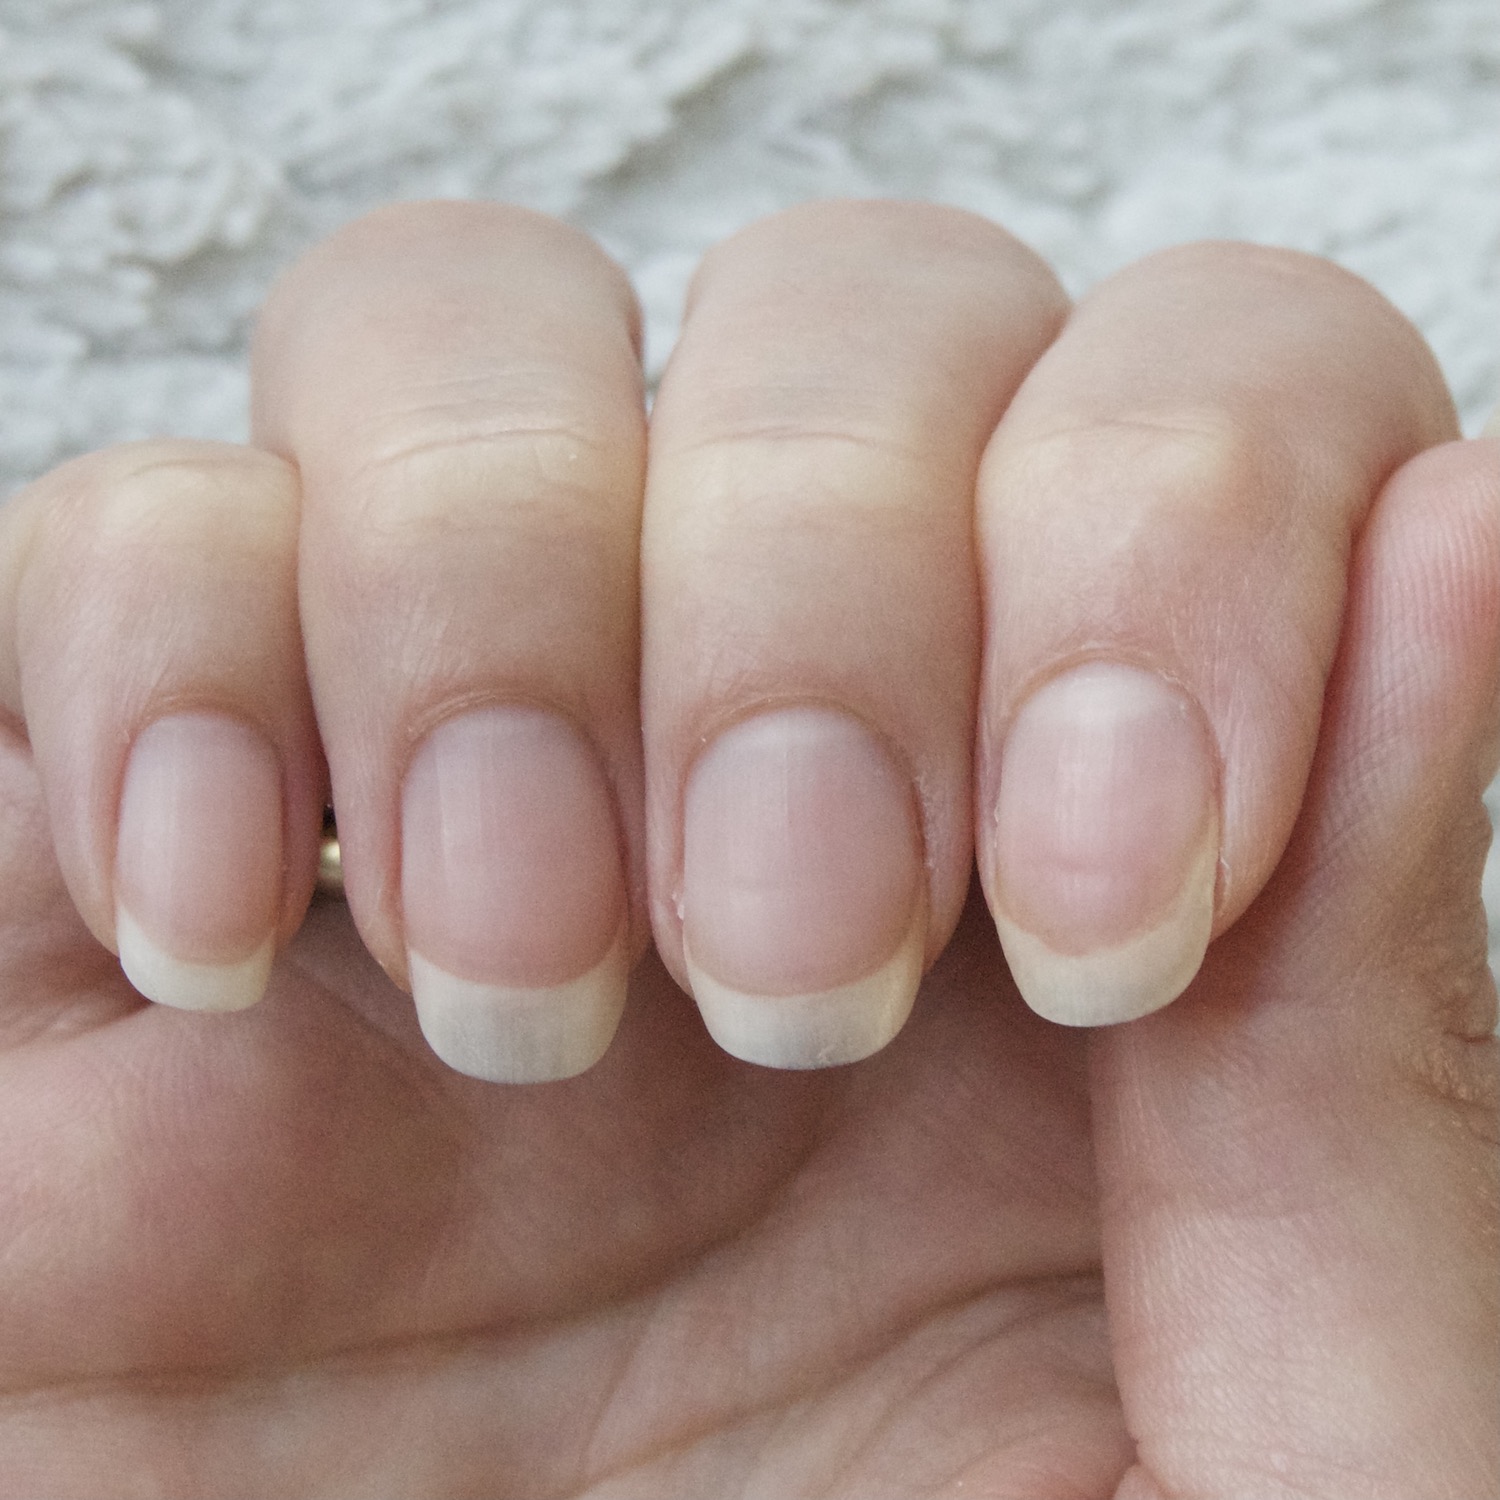 Mavala Scientifique K+ nagelverharder review mijn gespleten nagels na 3 maanden